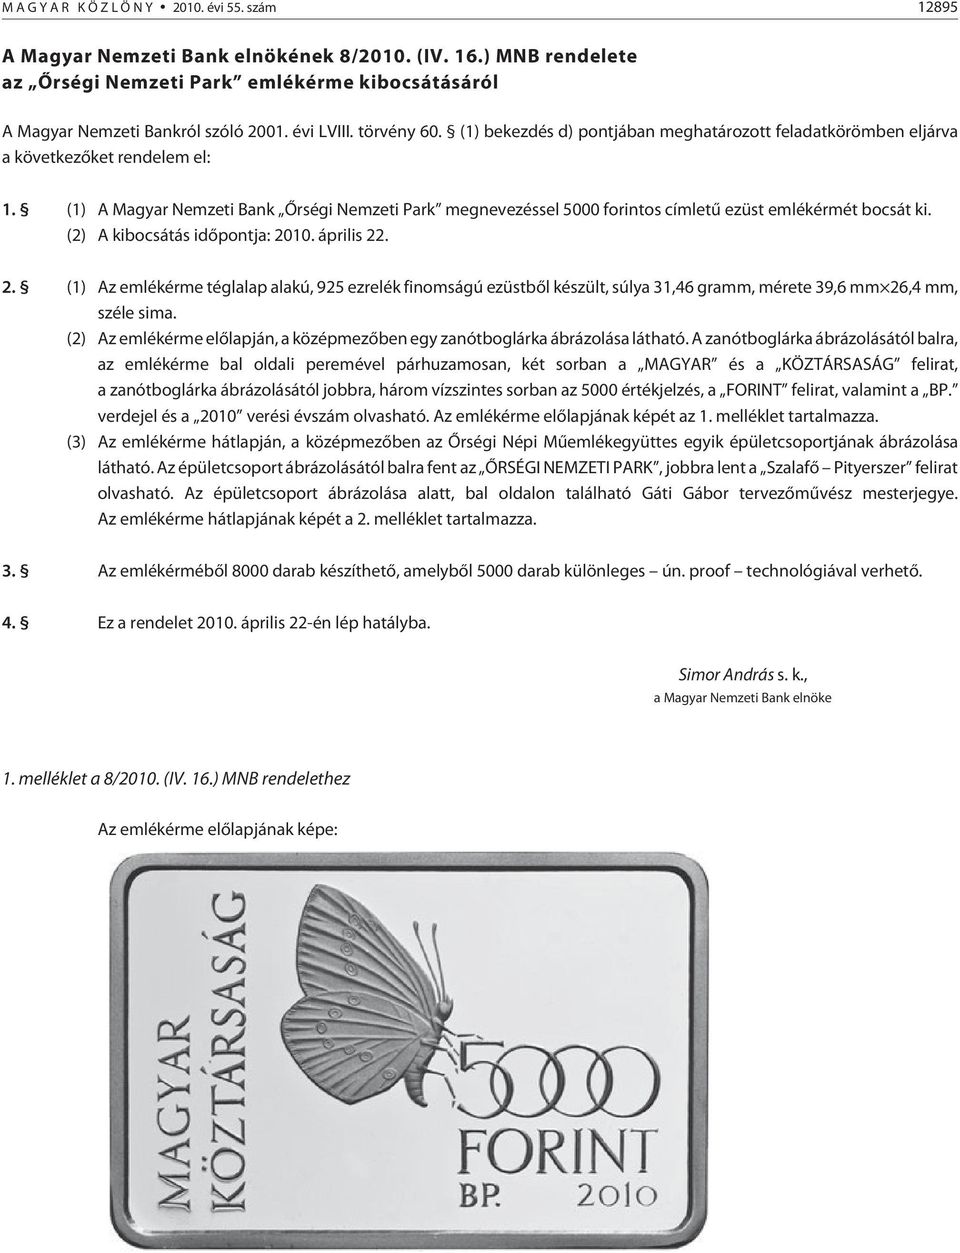 (1) A Magyar Nemzeti Bank Õrségi Nemzeti Park megnevezéssel 5000 forintos címletû ezüst emlékérmét bocsát ki. (2) A kibocsátás idõpontja: 20